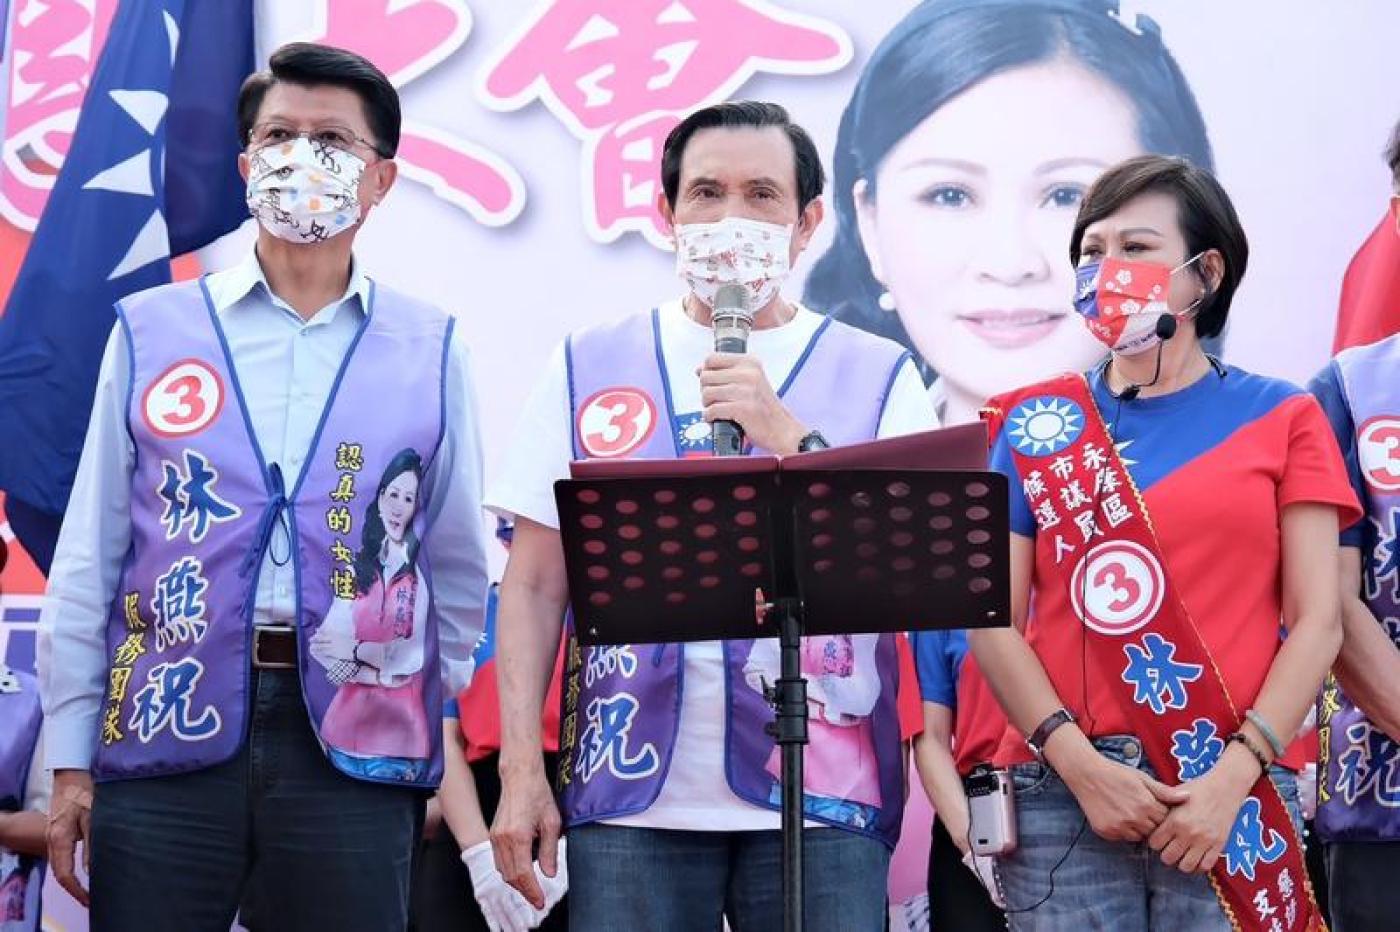 馬英九（中）近日到各地輔選，13日南下出席國民黨台南市議員參選人林燕祝 （右）造勢活動。林燕祝服務處提供